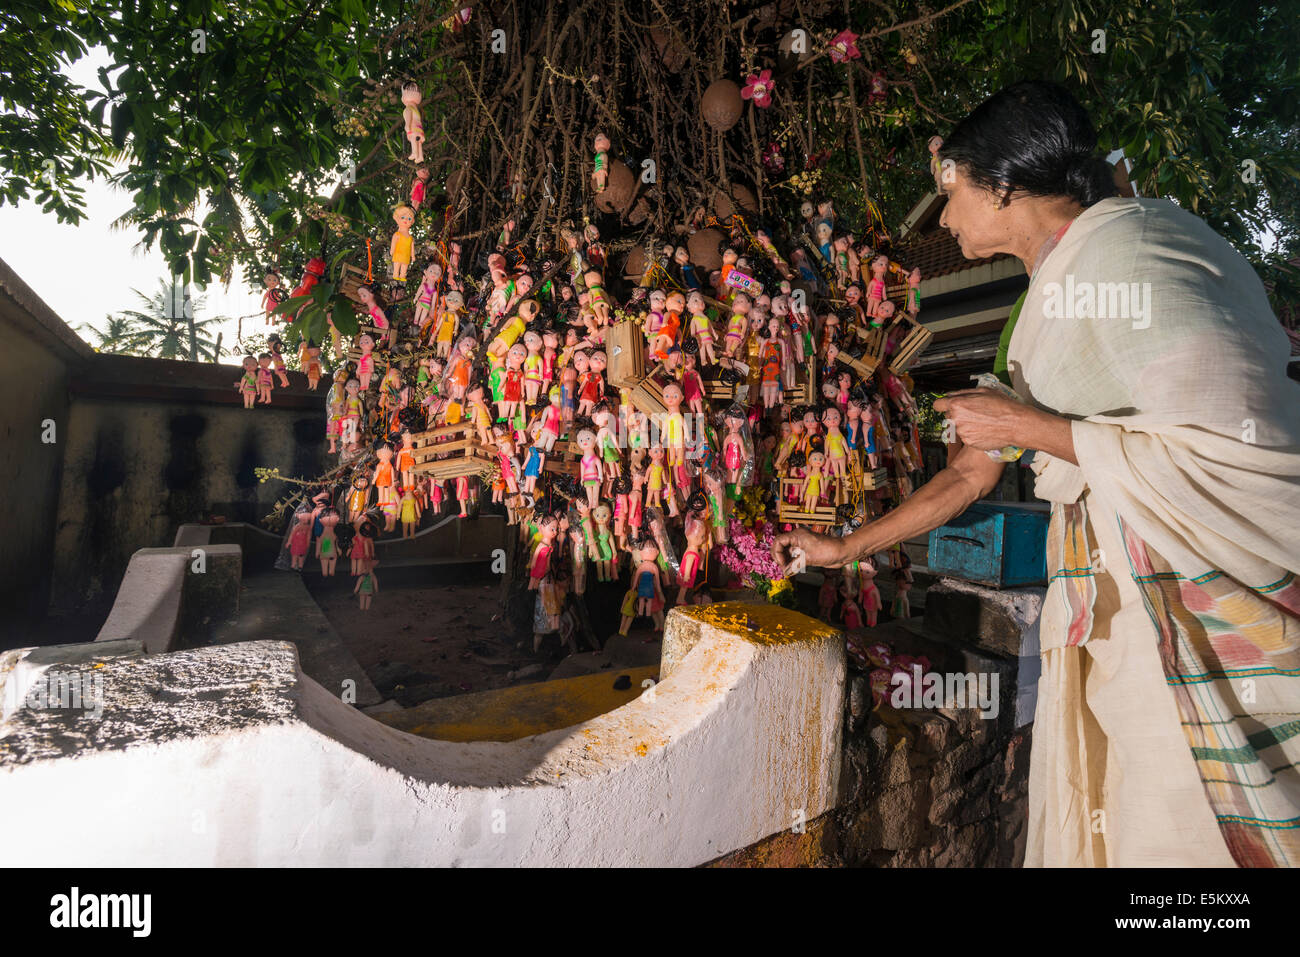 Frau eine Blume absetzen Puppen hängt an einem Baum, Angebote von kinderlosen Frauen, Janardanaswamy Tempel, Varkala, Kerala Stockfoto